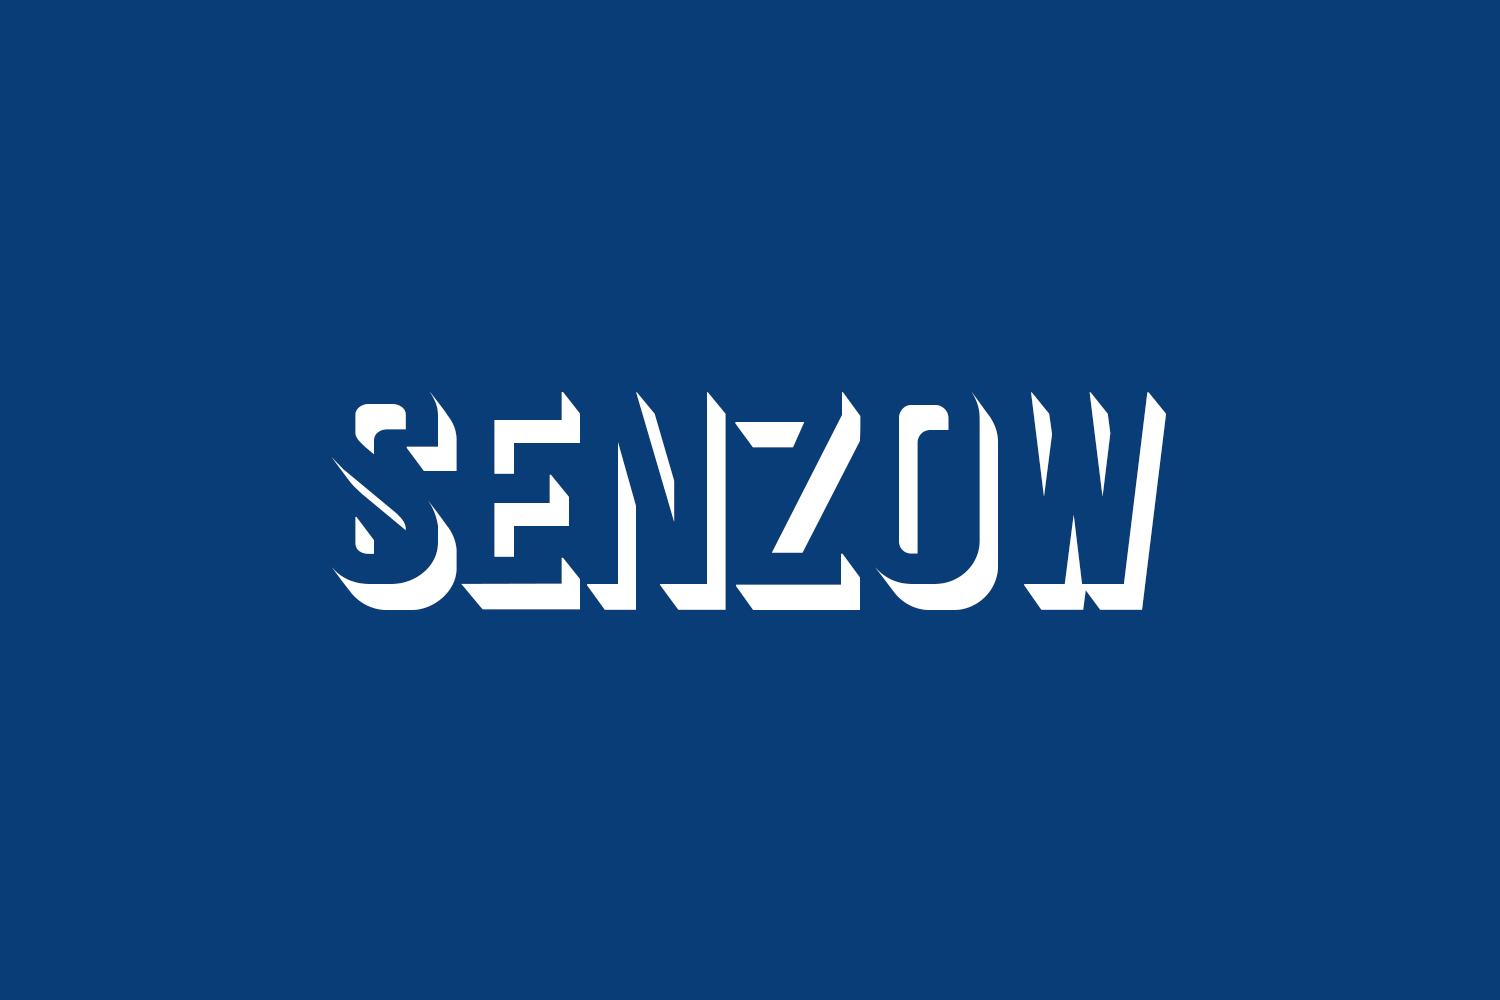 Senzow Free Font